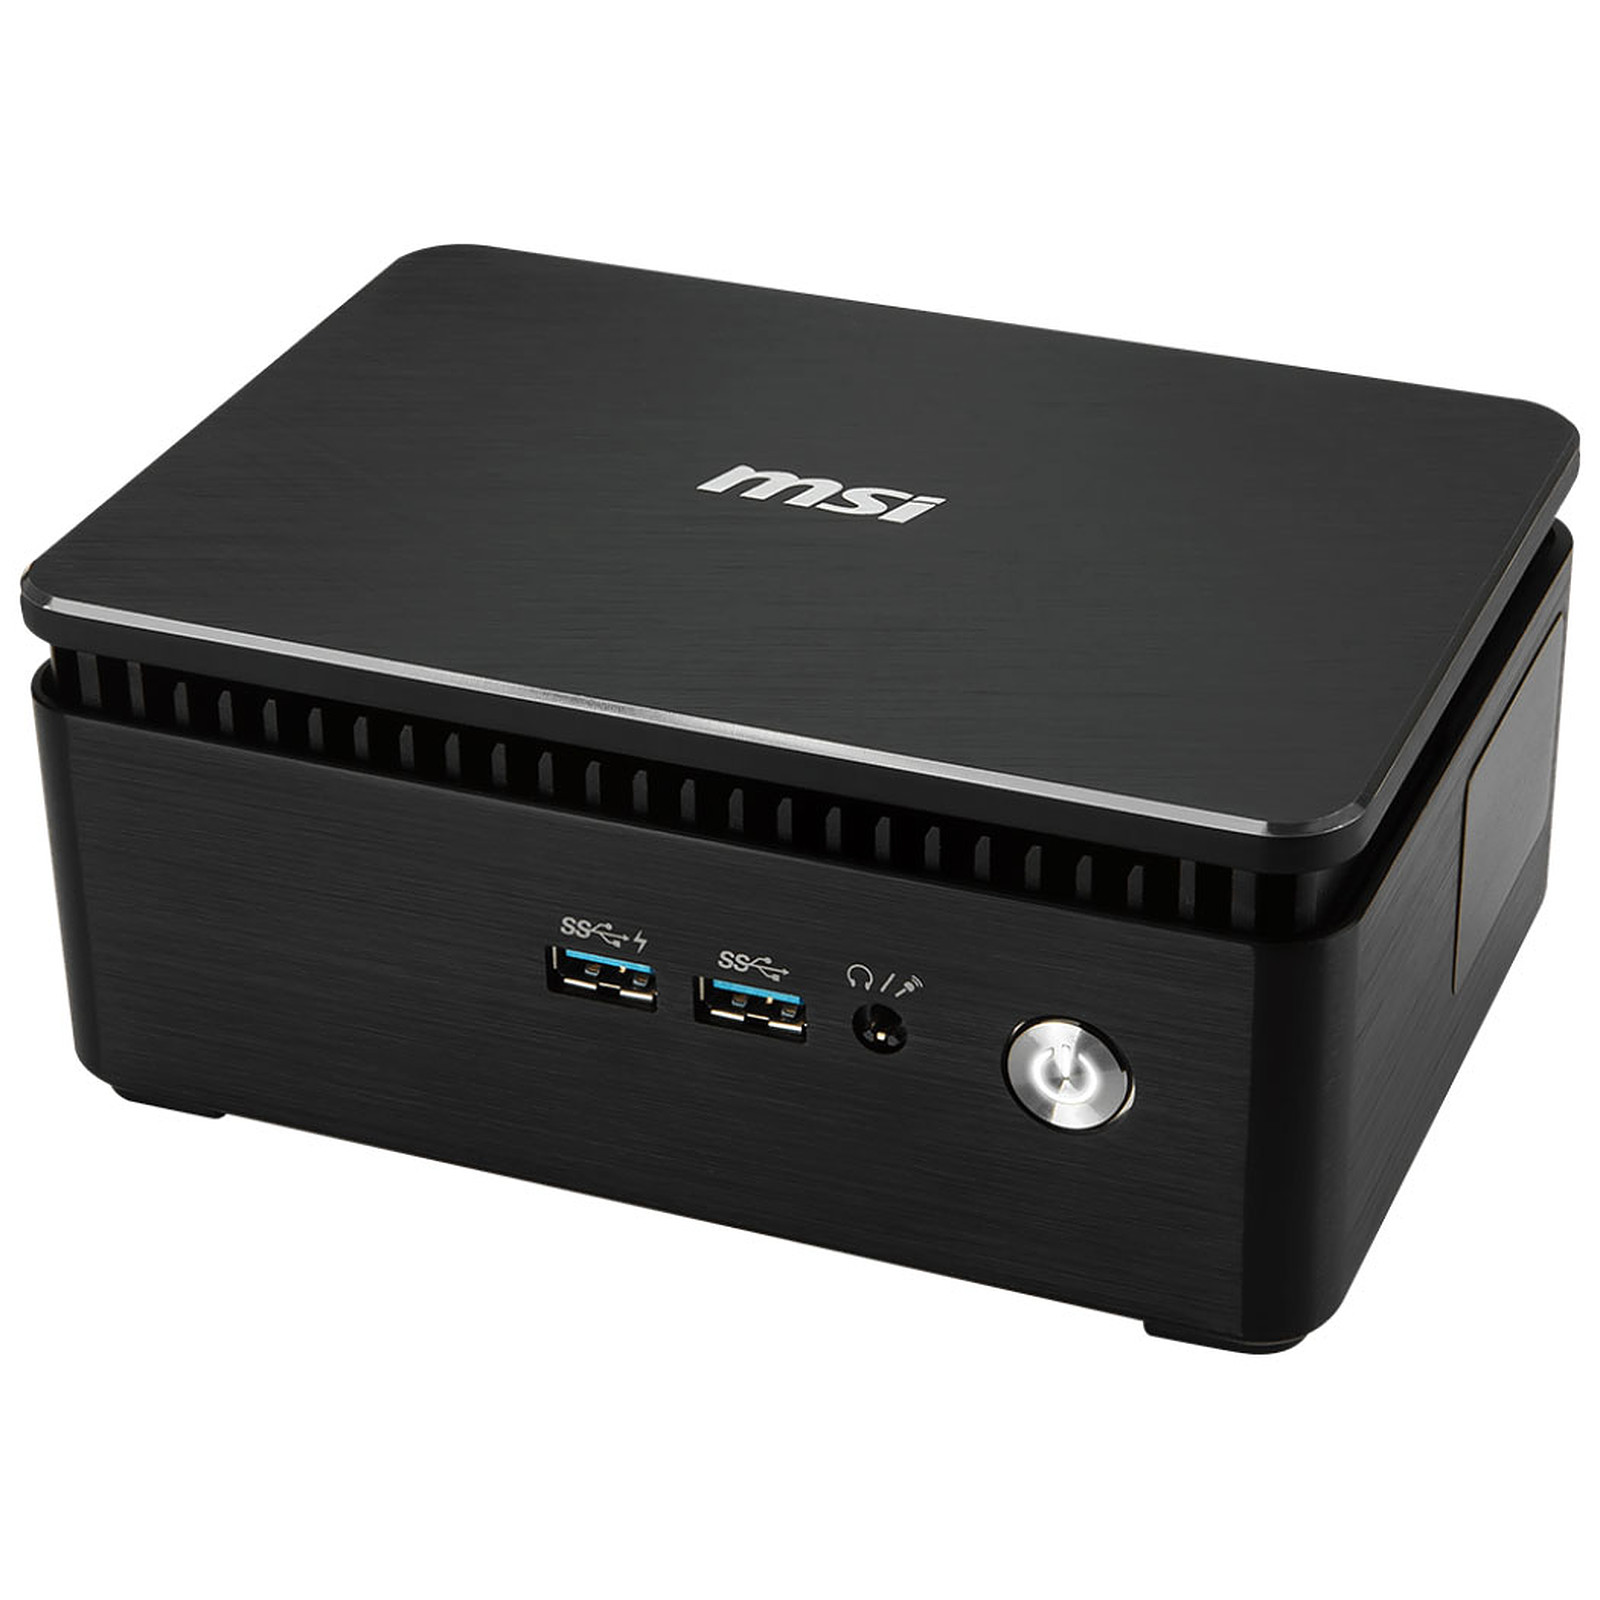 Mini ordinateur MSI Cubi 3 Silent S 005BEU i3 7100U, dual LAN, Port Srie, Wi-Fi AC, Bluetooth, emplacement DDR4 x2 et M.2 + 2.5 pouces, informatique ile de la Runion 974